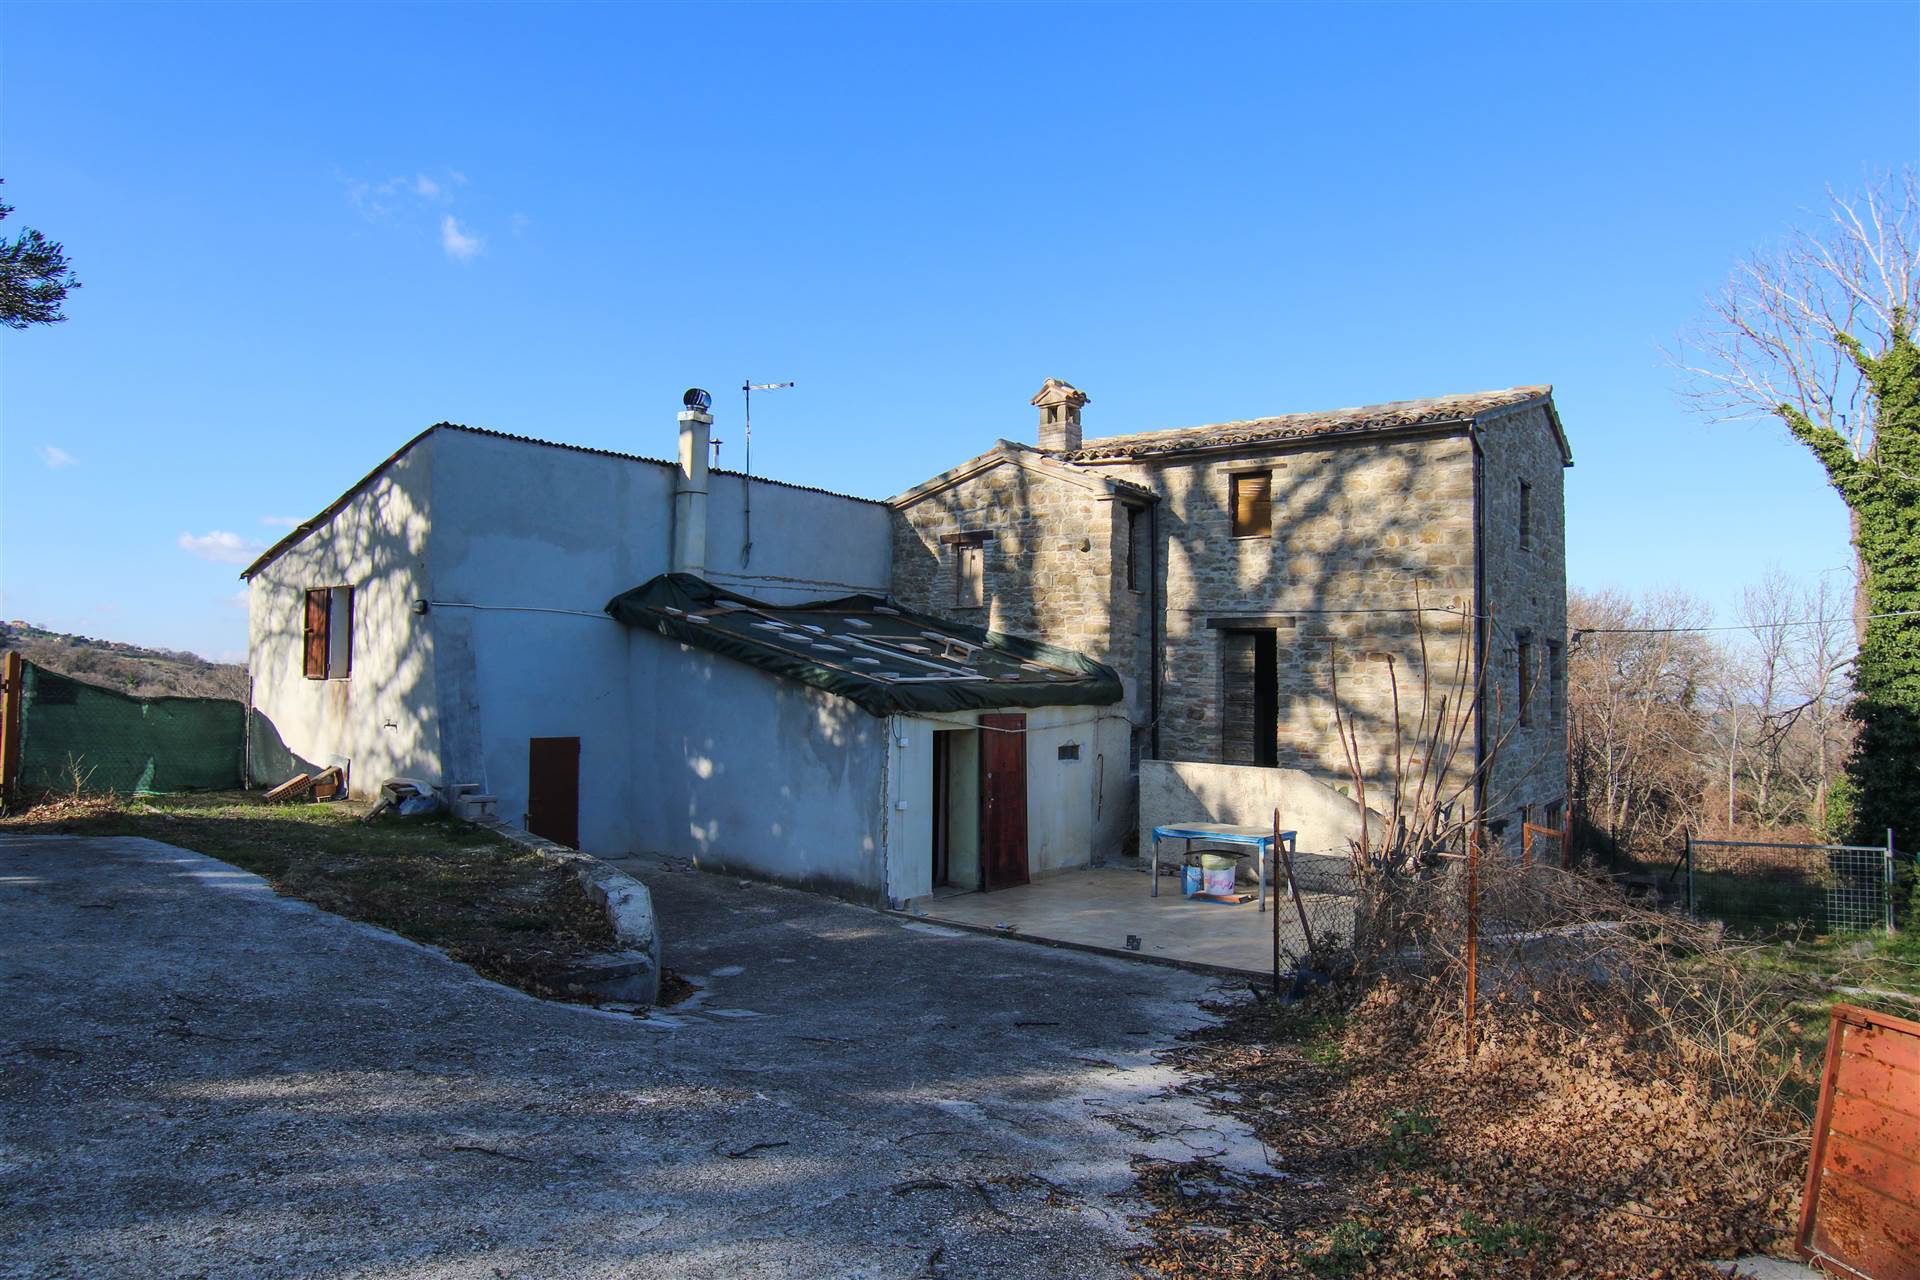 Rustico / Casale in vendita a Cingoli, 3 locali, zona Località: MORICHETTO, prezzo € 55.000 | PortaleAgenzieImmobiliari.it